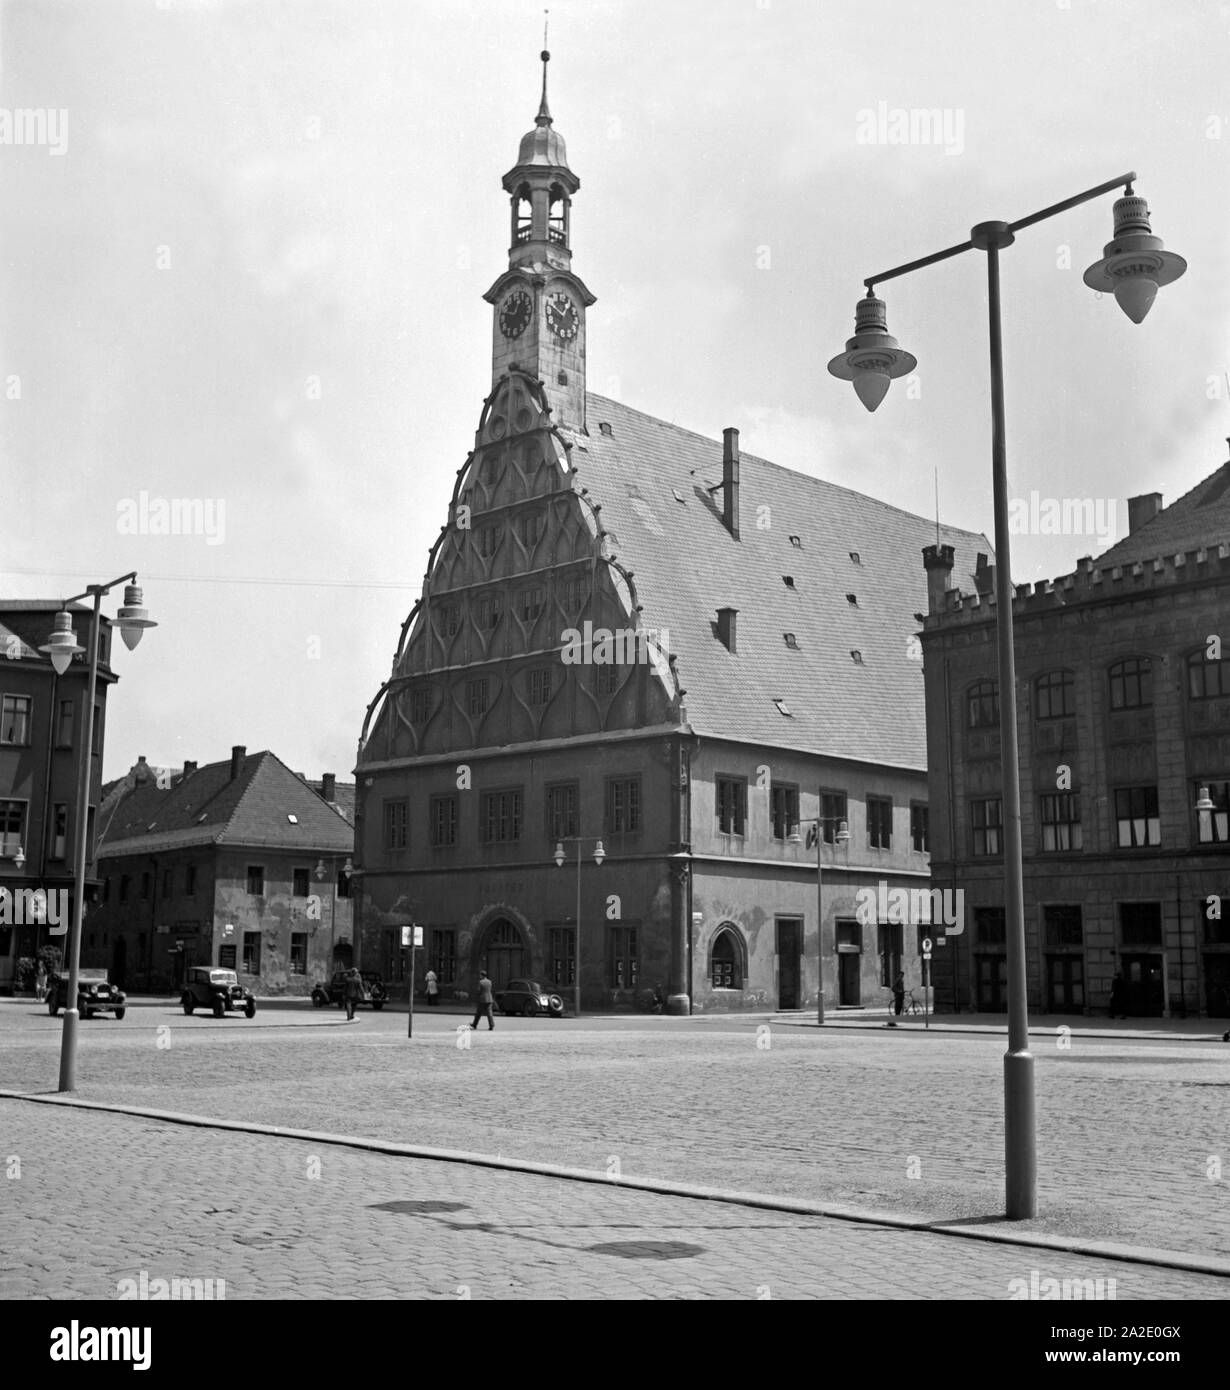 Das Rathaus mit dem Gewandhaus in der Altstadt von Zwickau, Deutschland 1930er Jahre. Il municipio e la guild hall nella vecchia città di Zwickau, Germania 1930s. Foto Stock